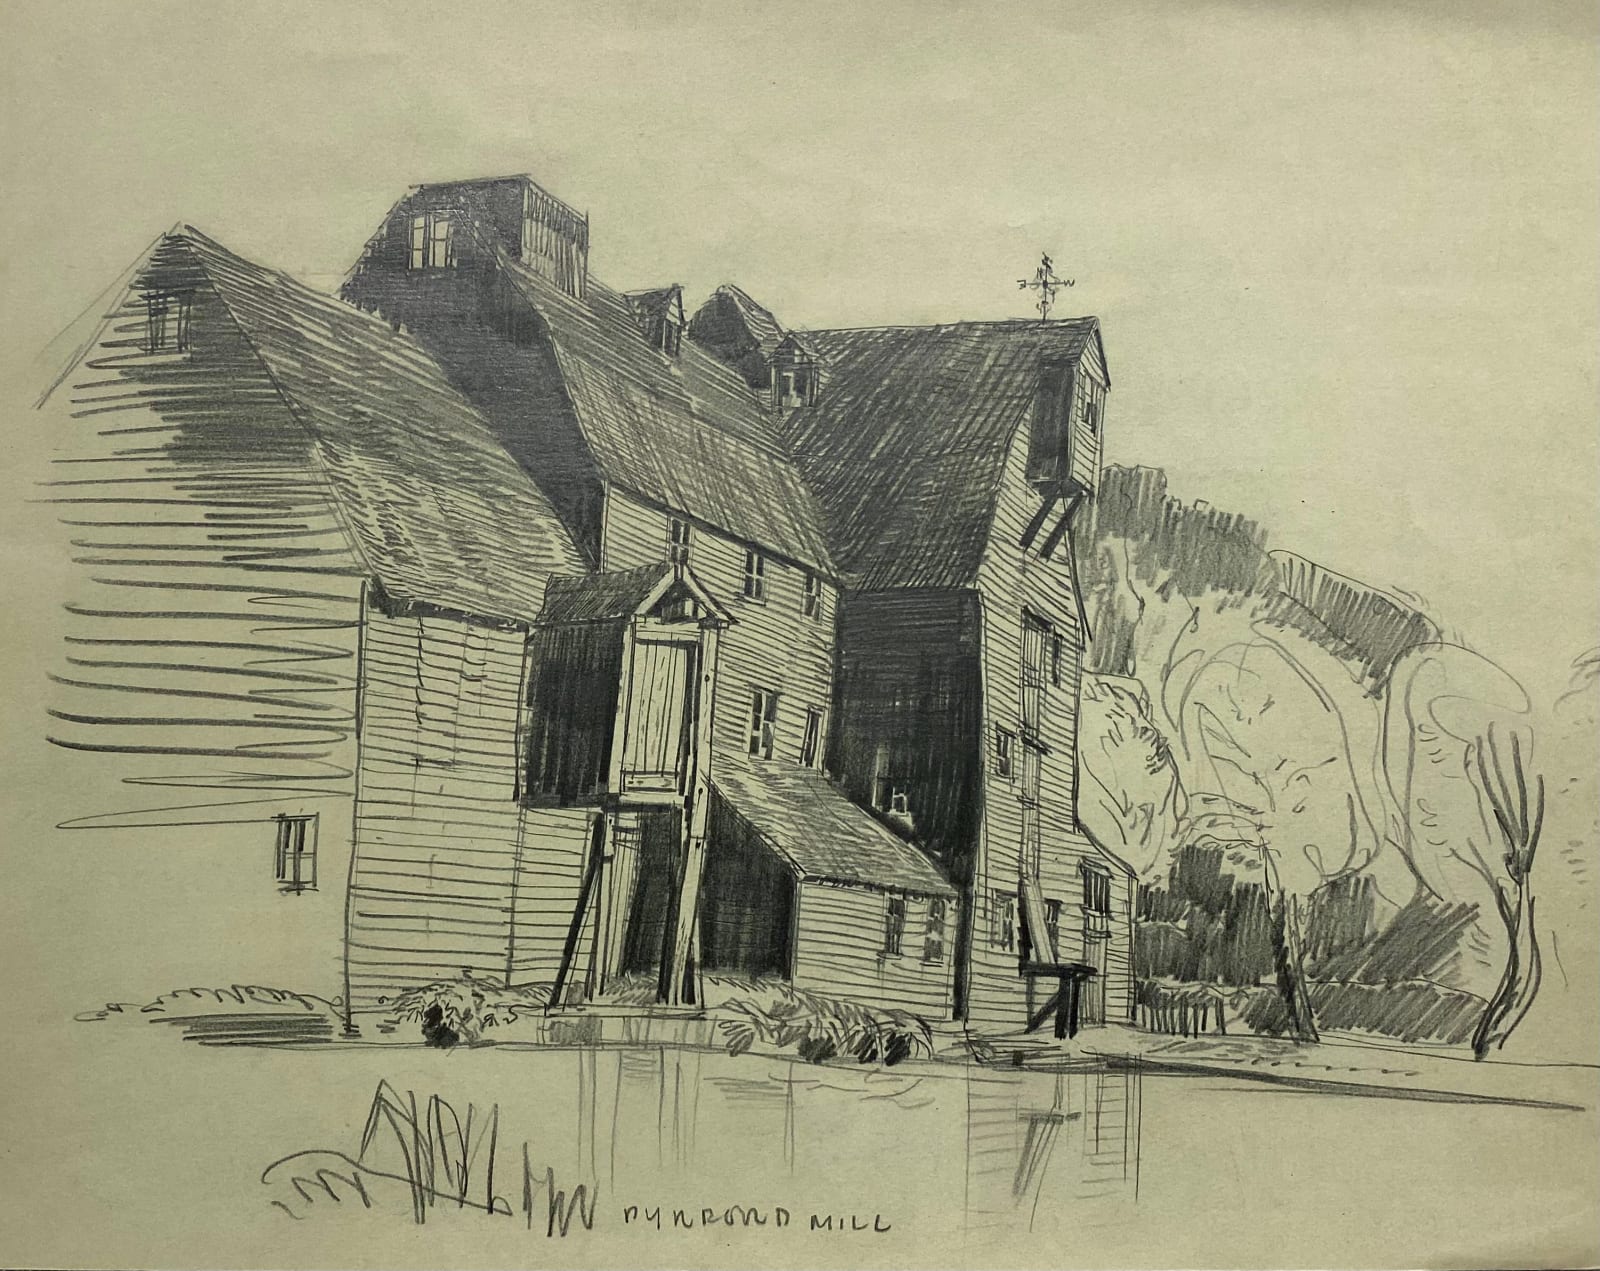 Roland Collins, Dyeround Mill